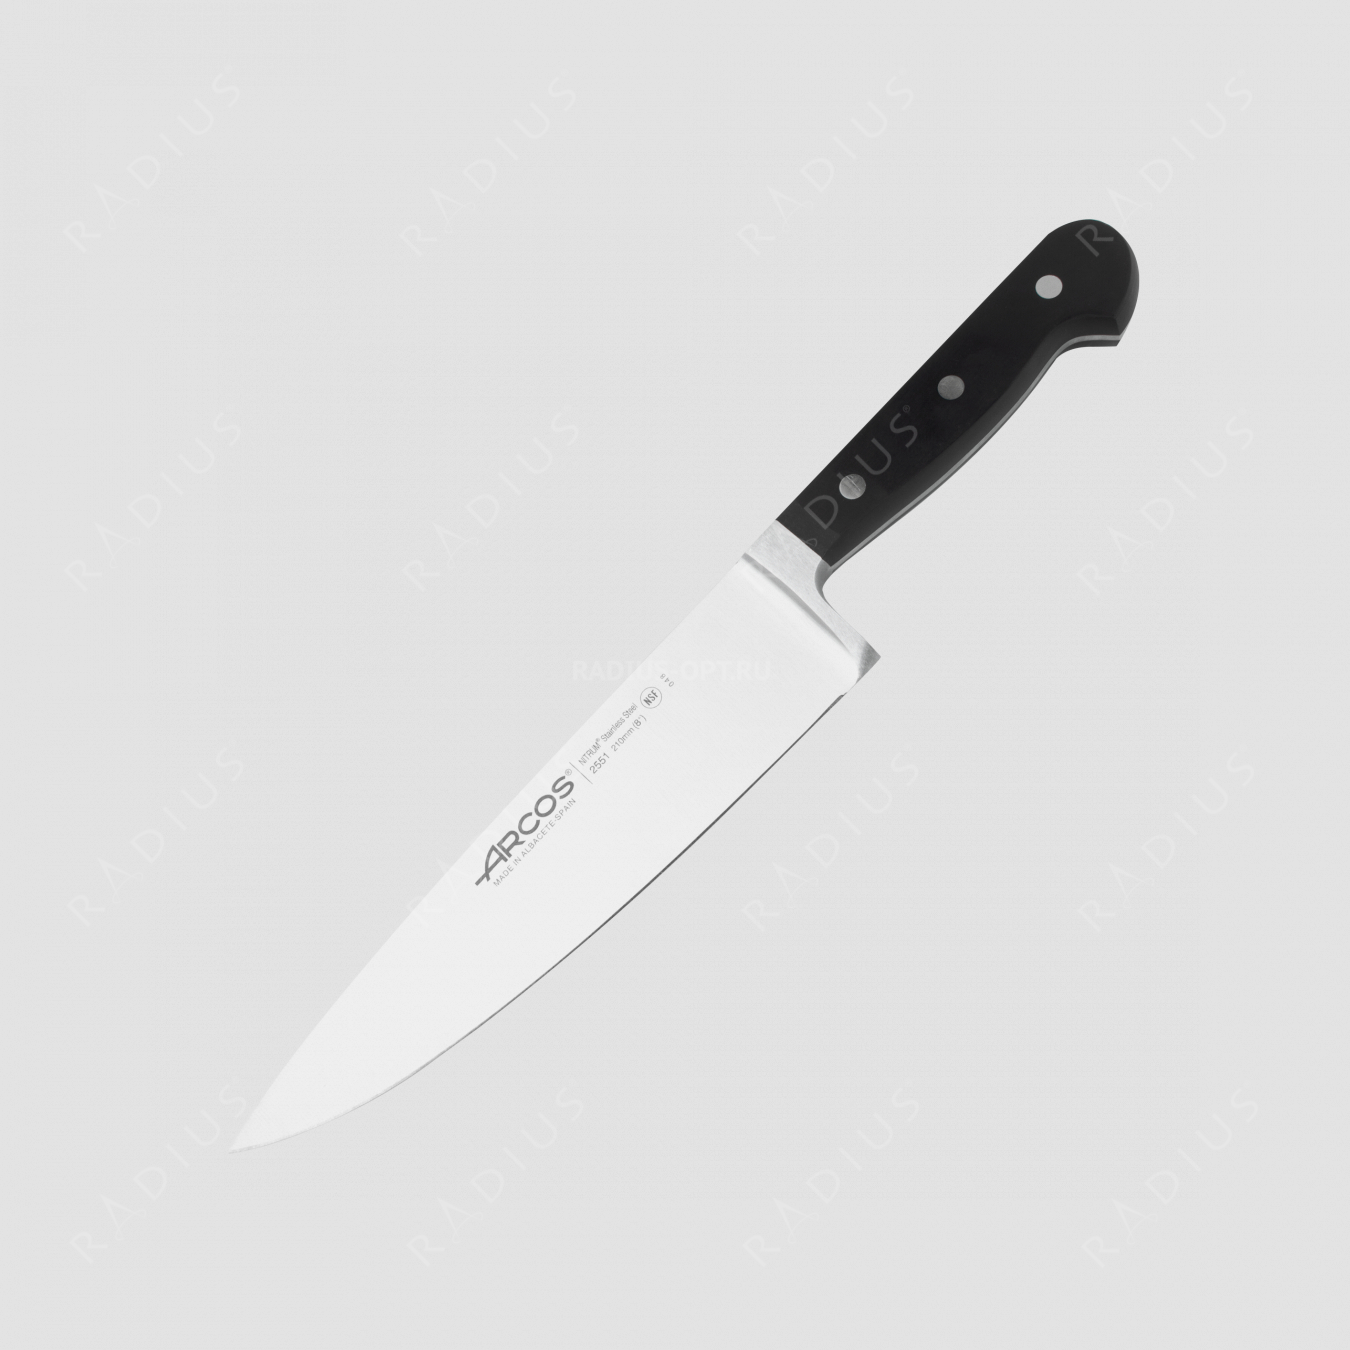 Профессиональный поварской кухонный нож 21 см, серия Clasica, ARCOS, Испания